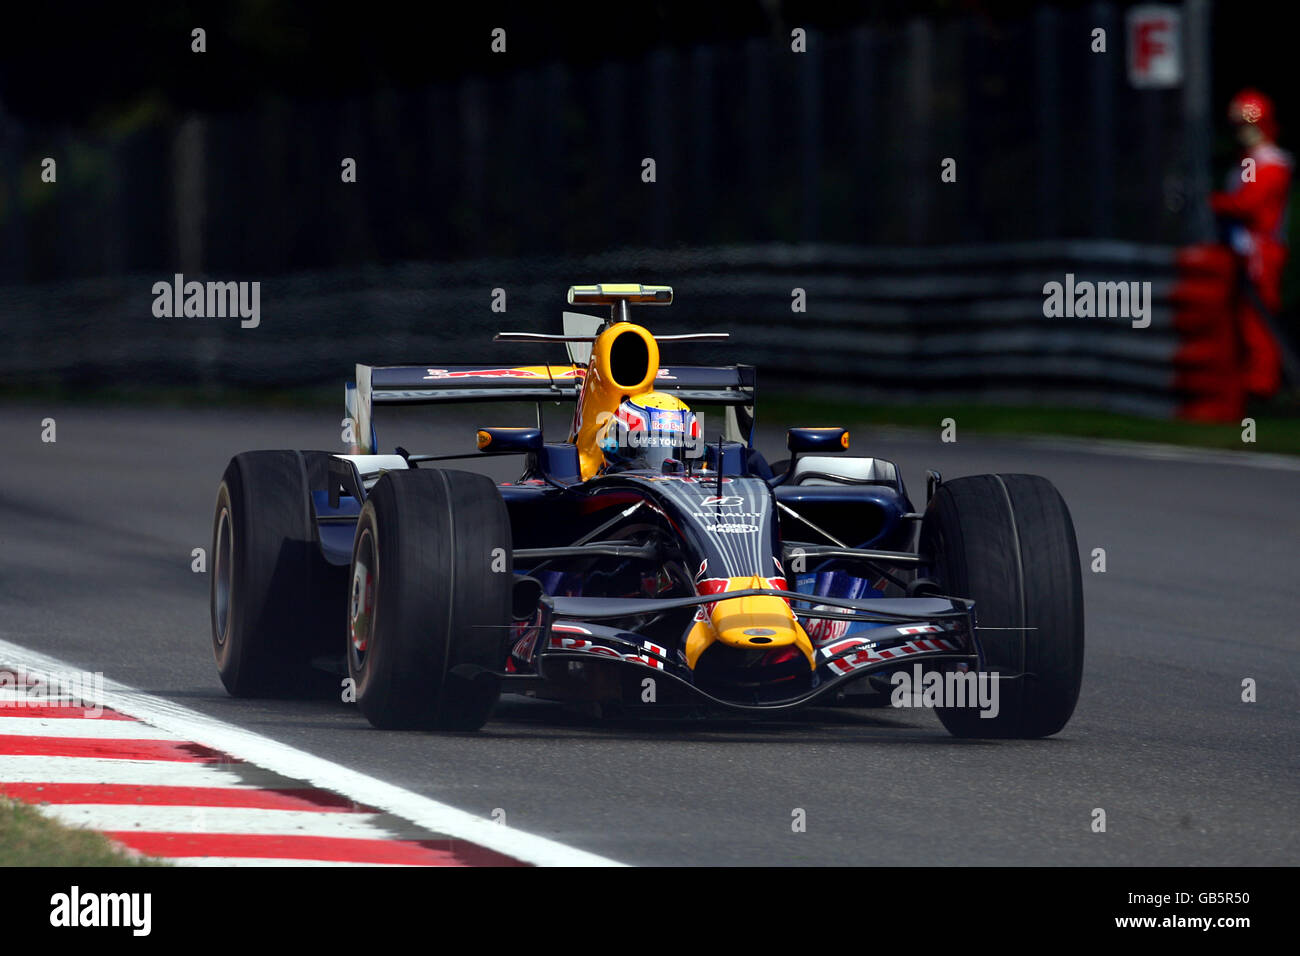 Mark Webber de Red Bull Racing lors de la deuxième séance d'entraînement à Monza, en Italie. Banque D'Images